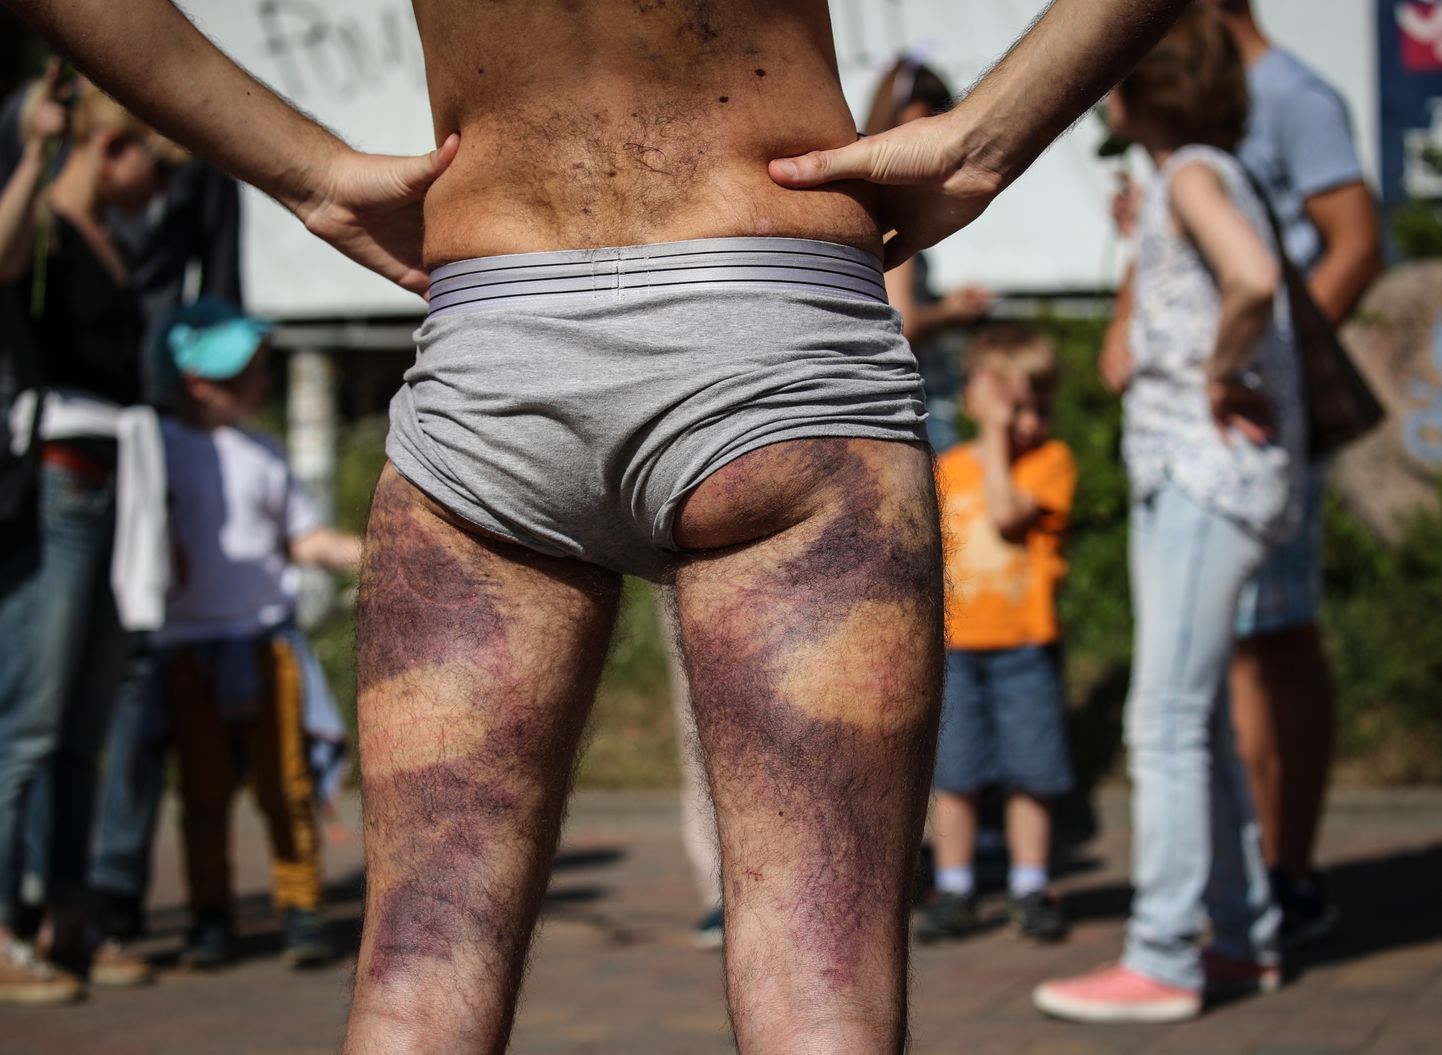 Vardarbības pēdas pēc iznākšanas no izolatora Minskā 2020.gada 15.augustā